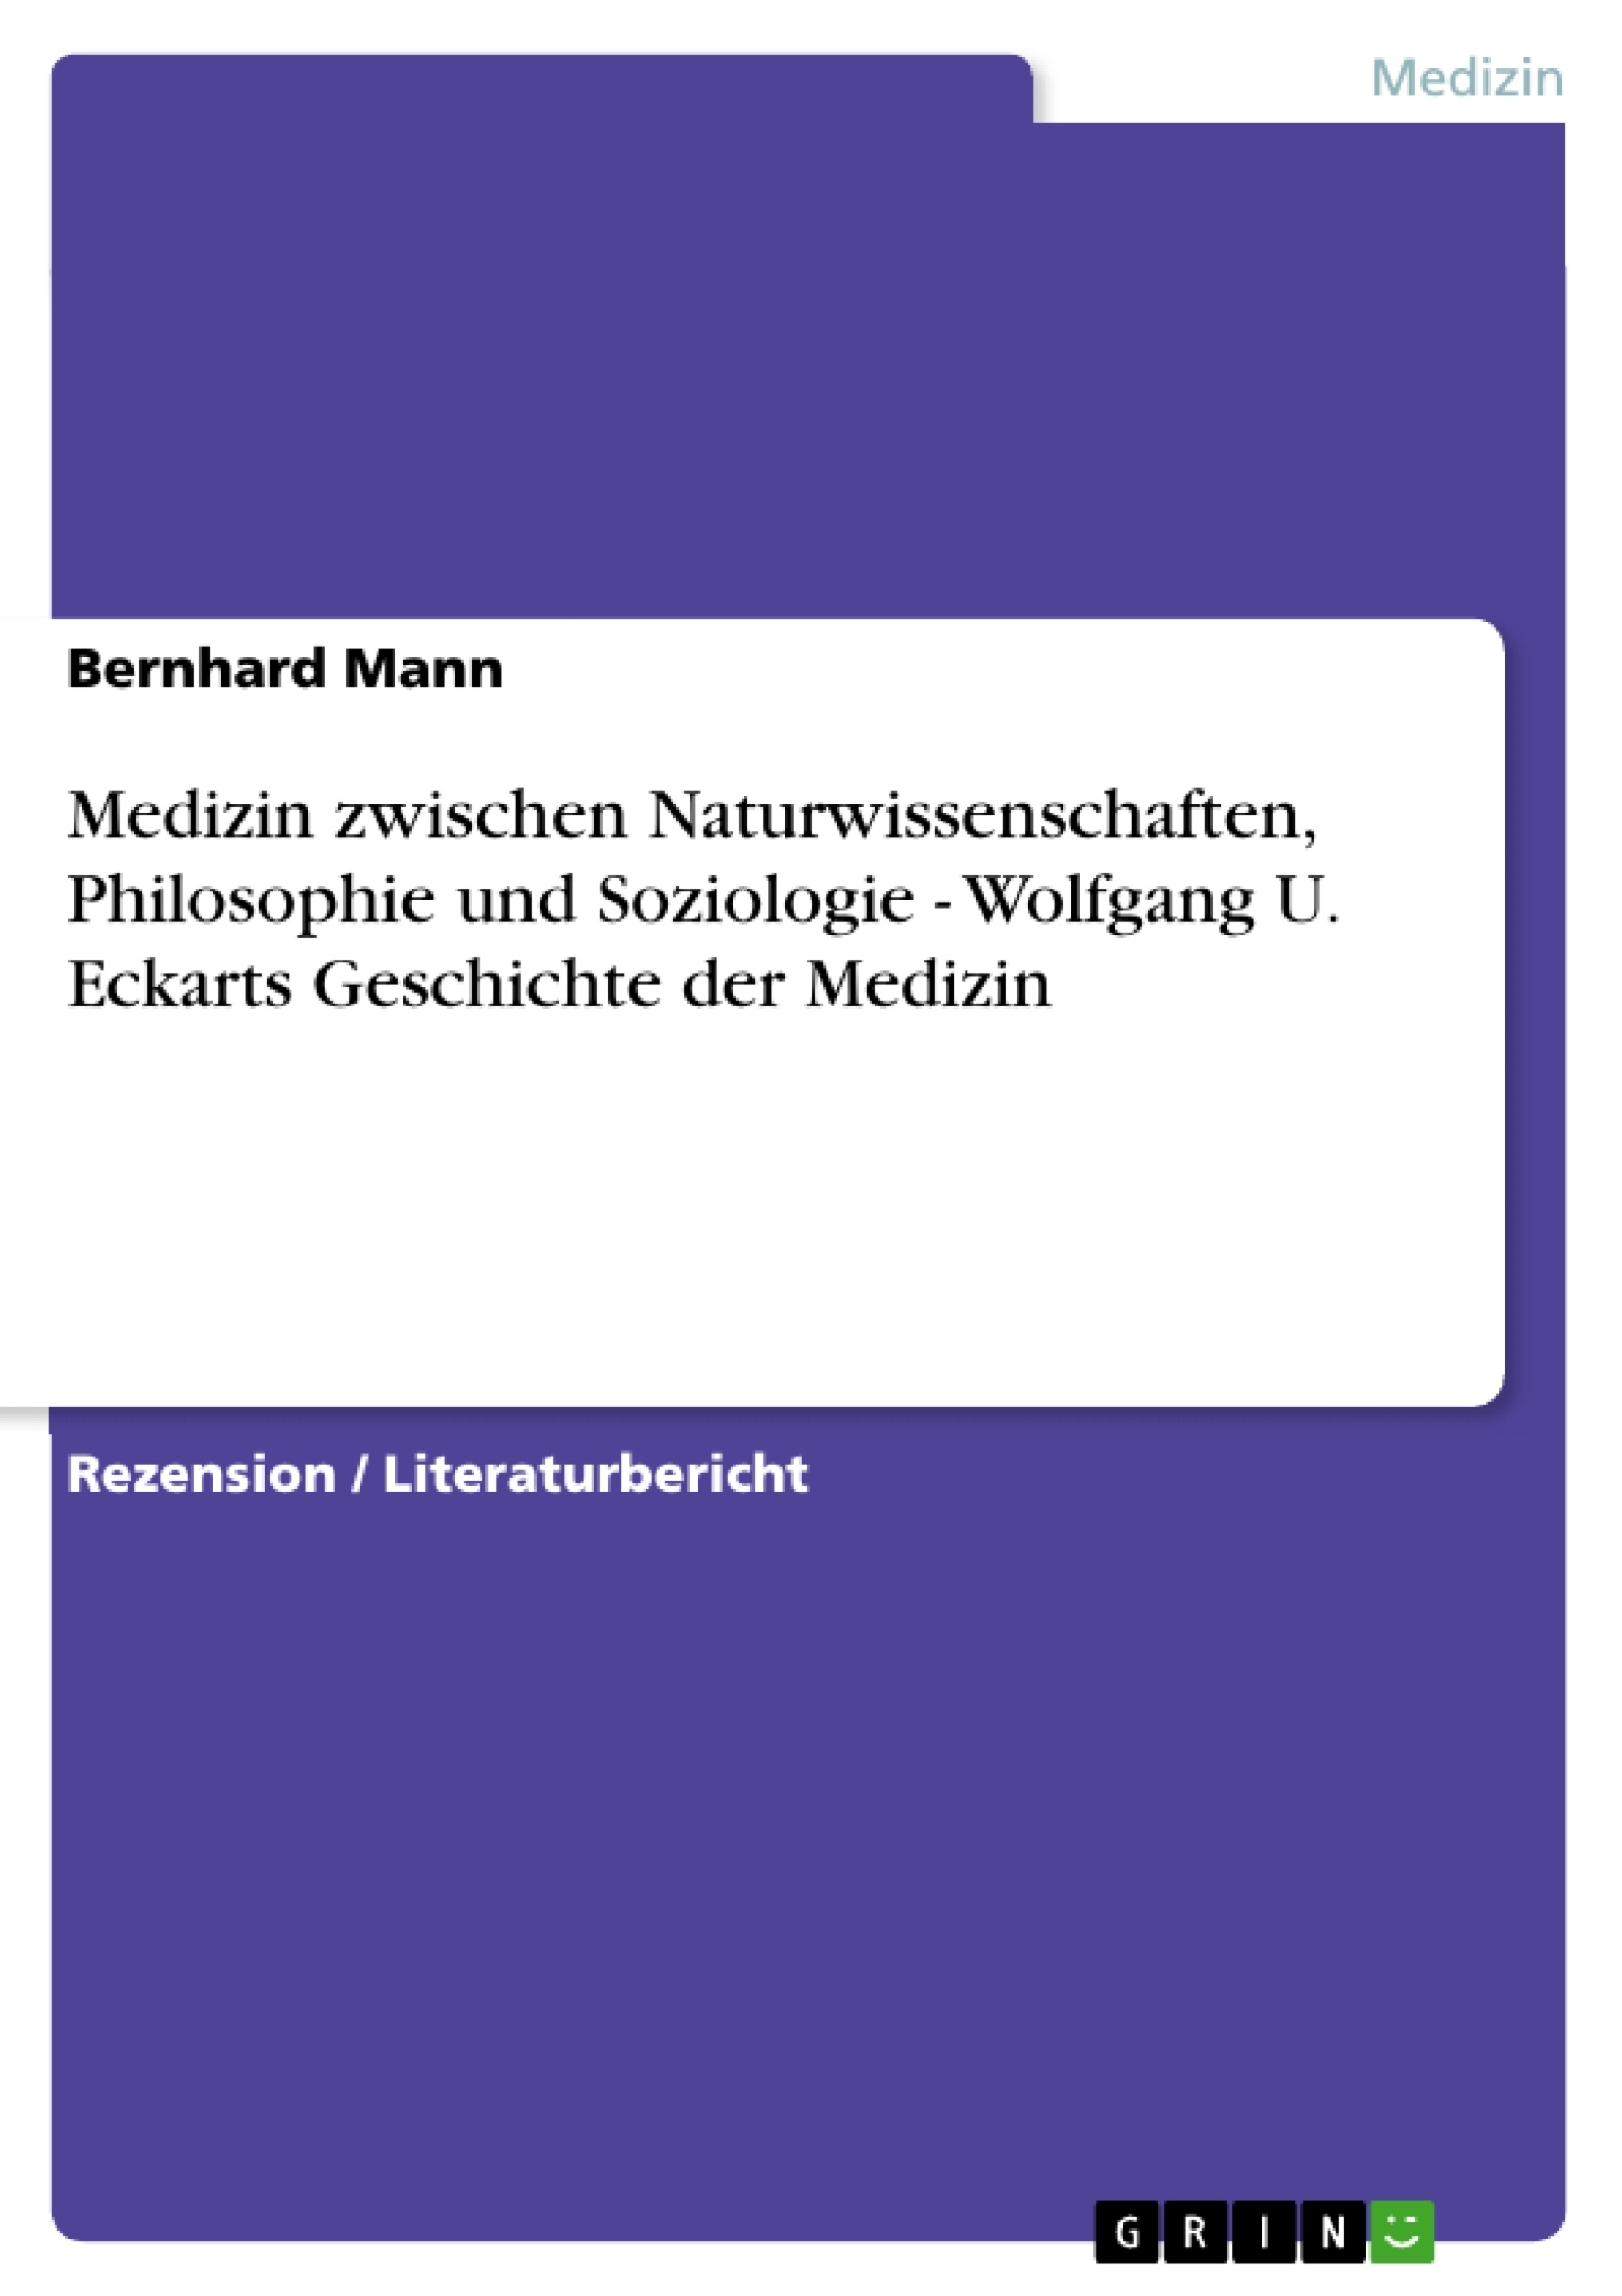 Título: Medizin zwischen Naturwissenschaften, Philosophie und Soziologie - Wolfgang U. Eckarts Geschichte der Medizin